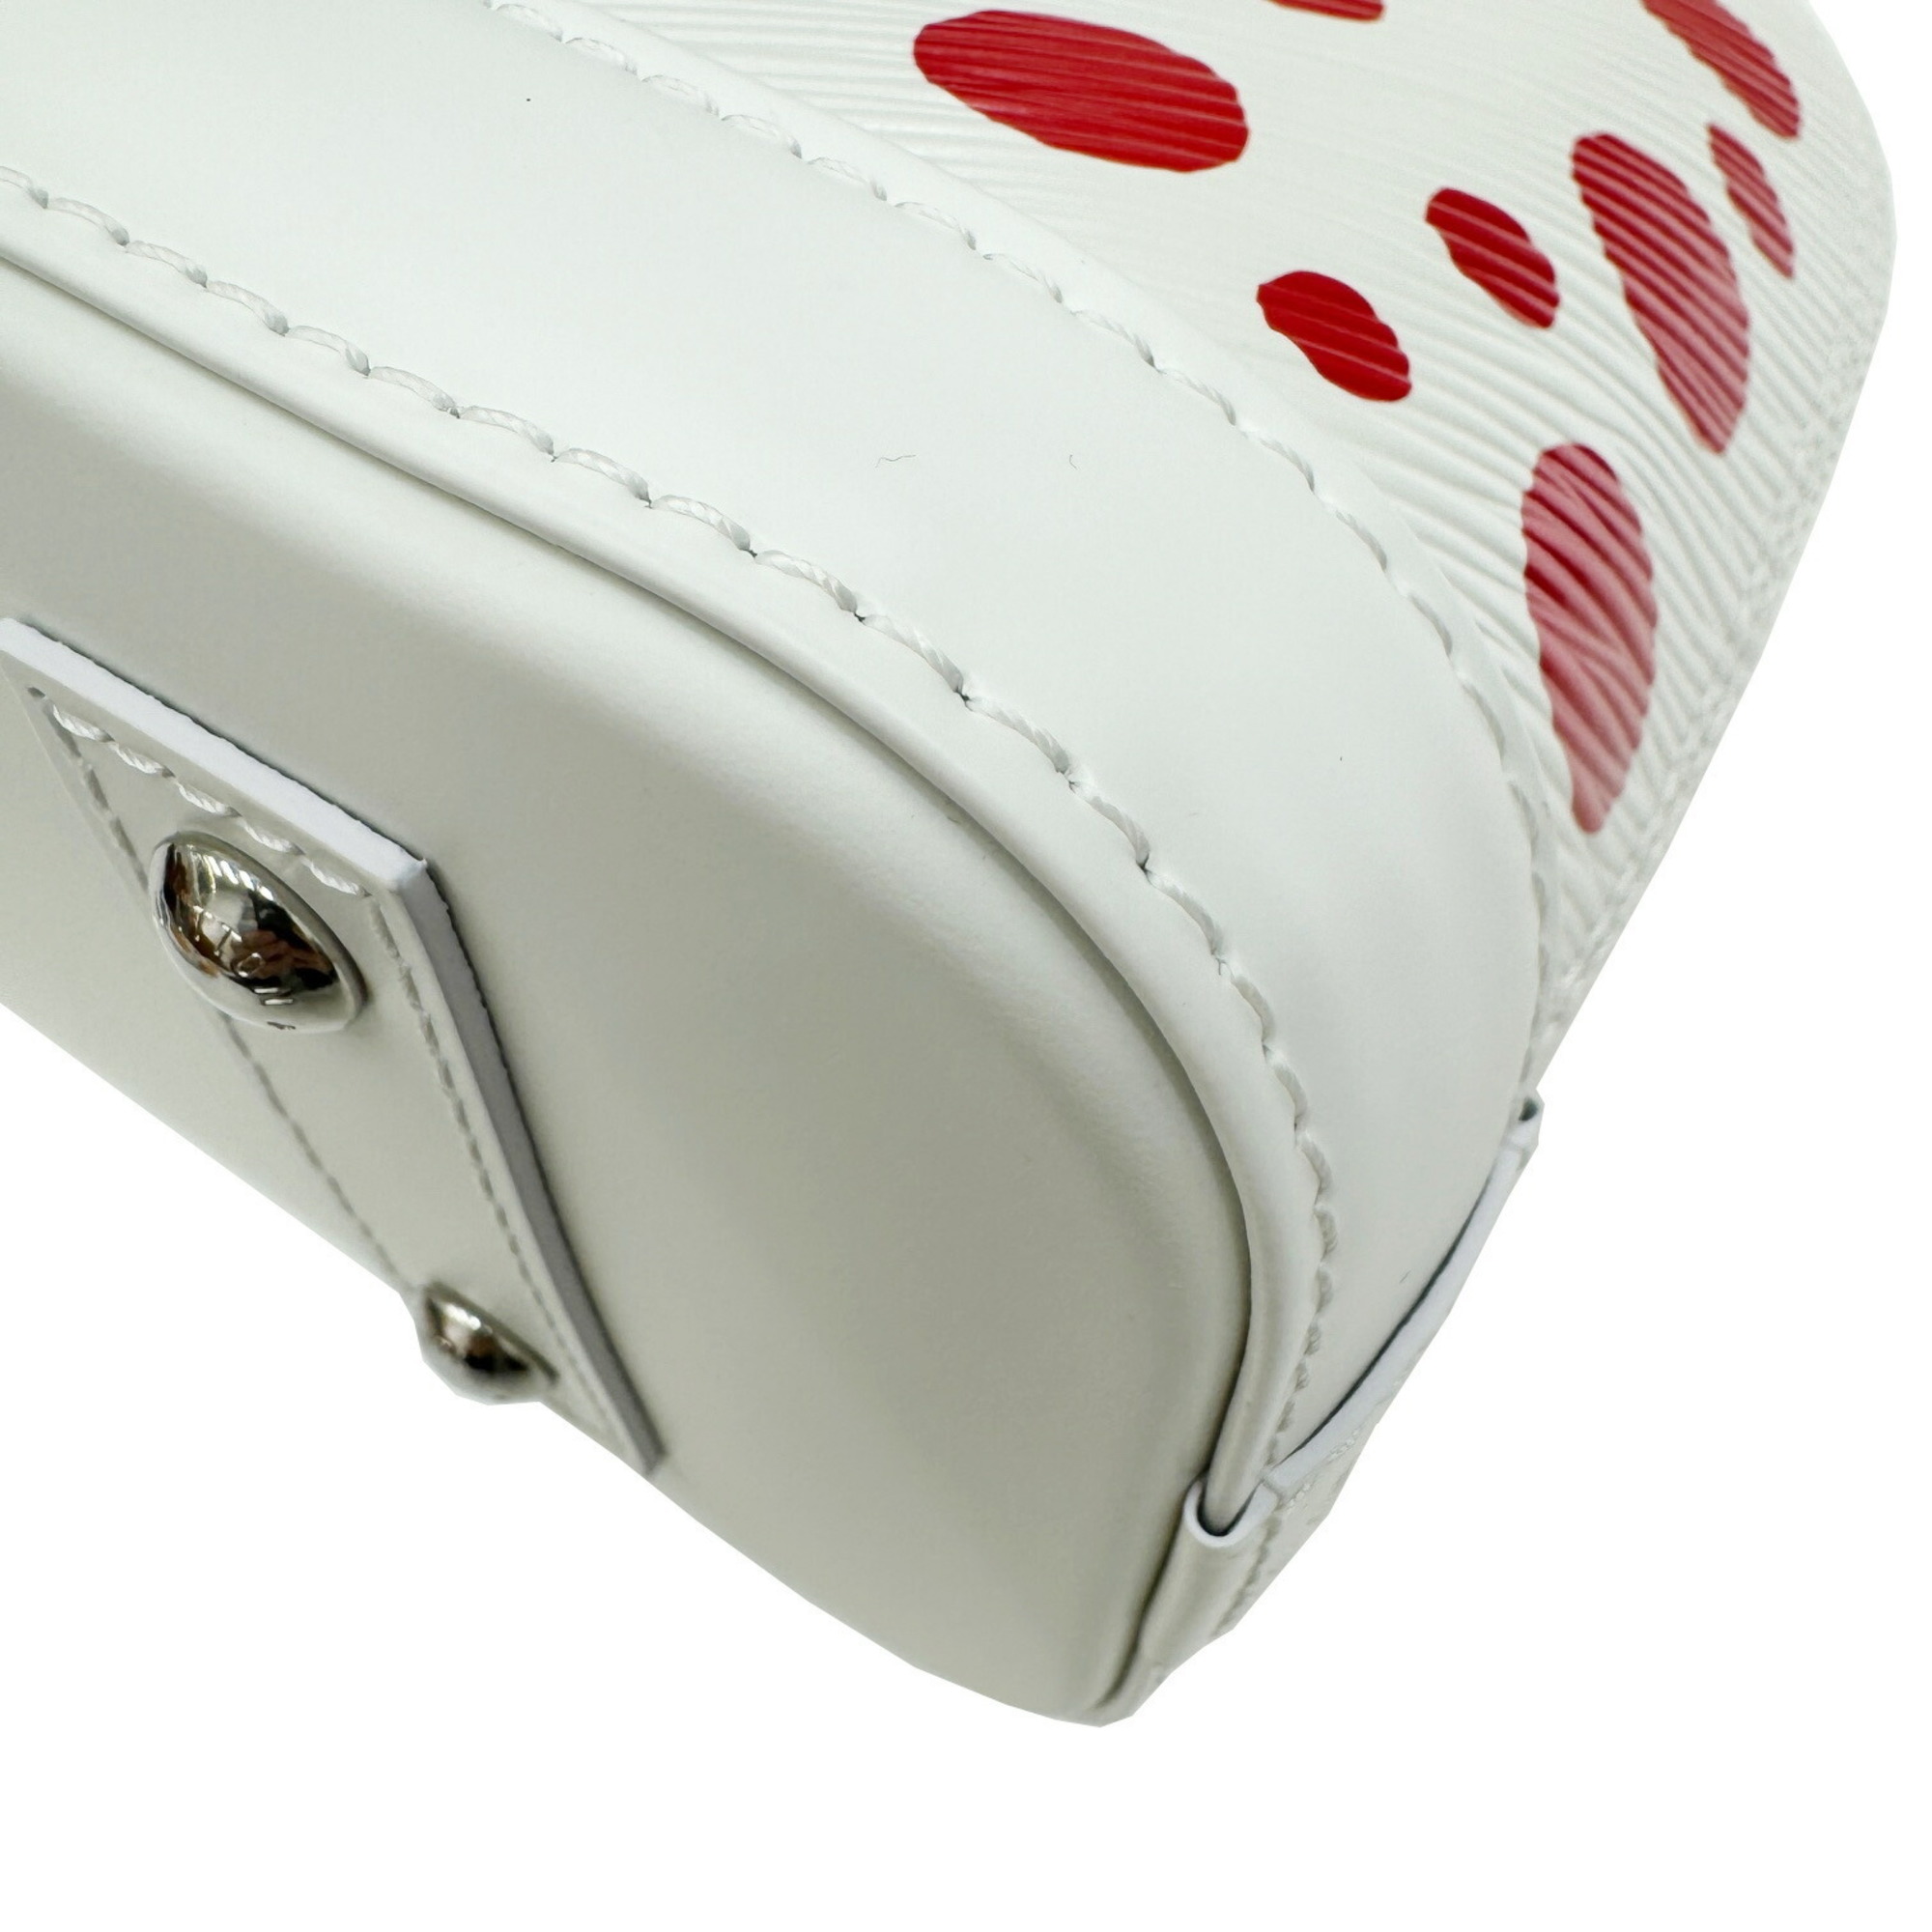 LOUIS VUITTON Louis Vuitton LVxYK Alma BB M21712 RFID IC Chip Yayoi Kusama Collaboration Mayoi Epi White Red Shoulder Bag Handbag Ladies